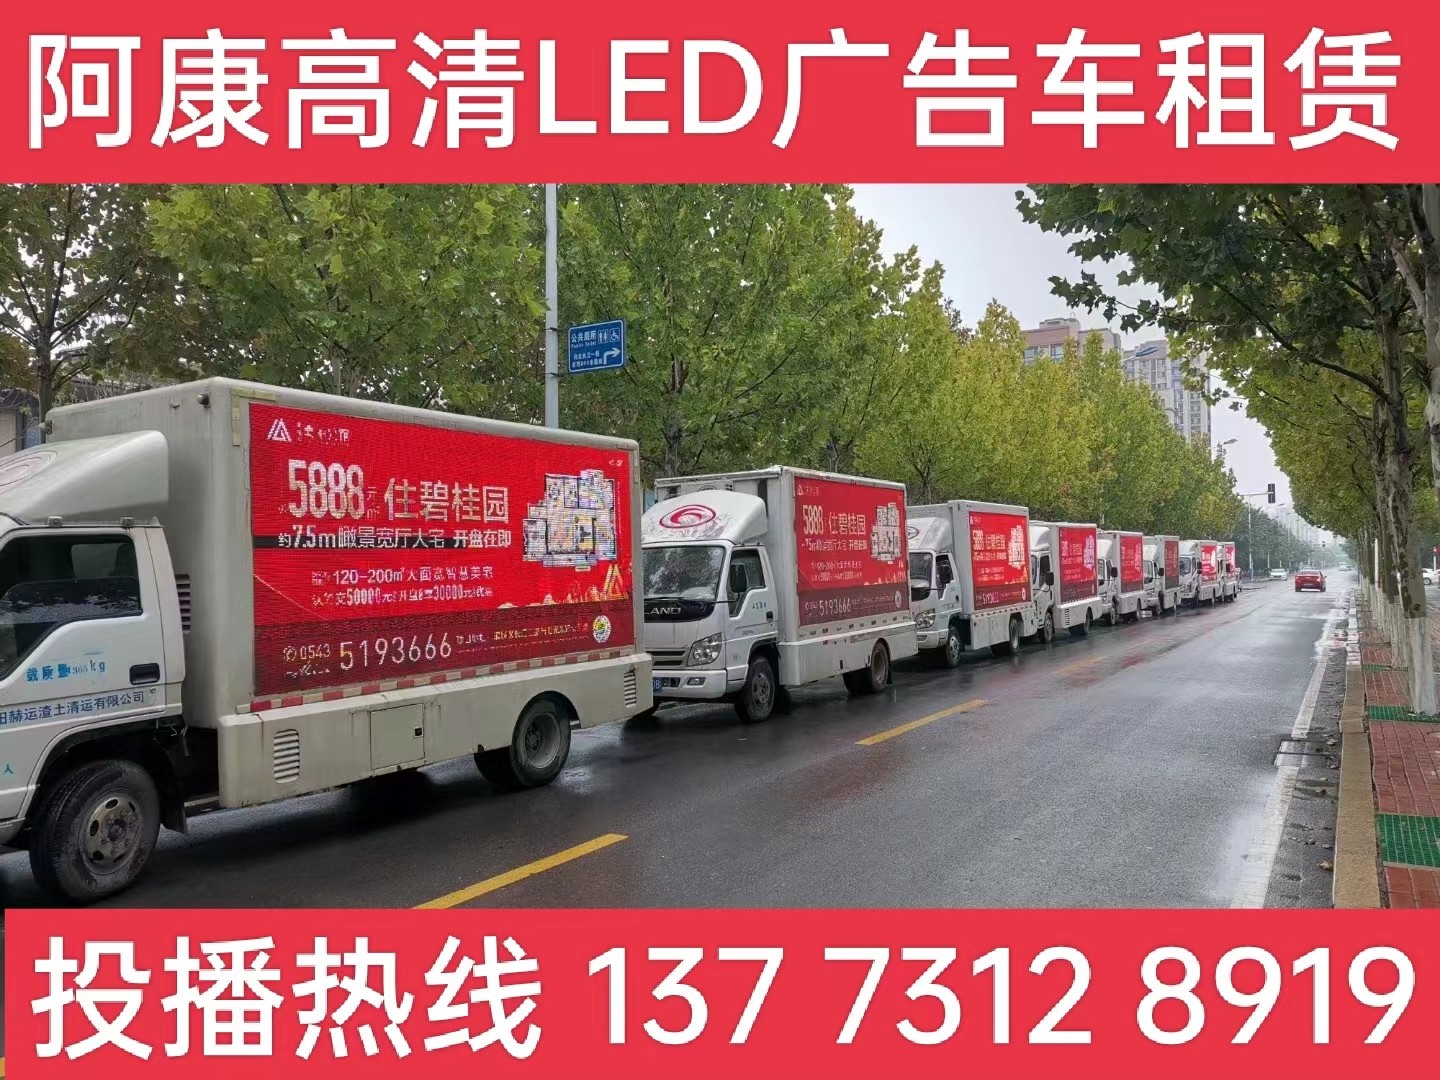 海陵区宣传车租赁公司-楼盘LED广告车投放